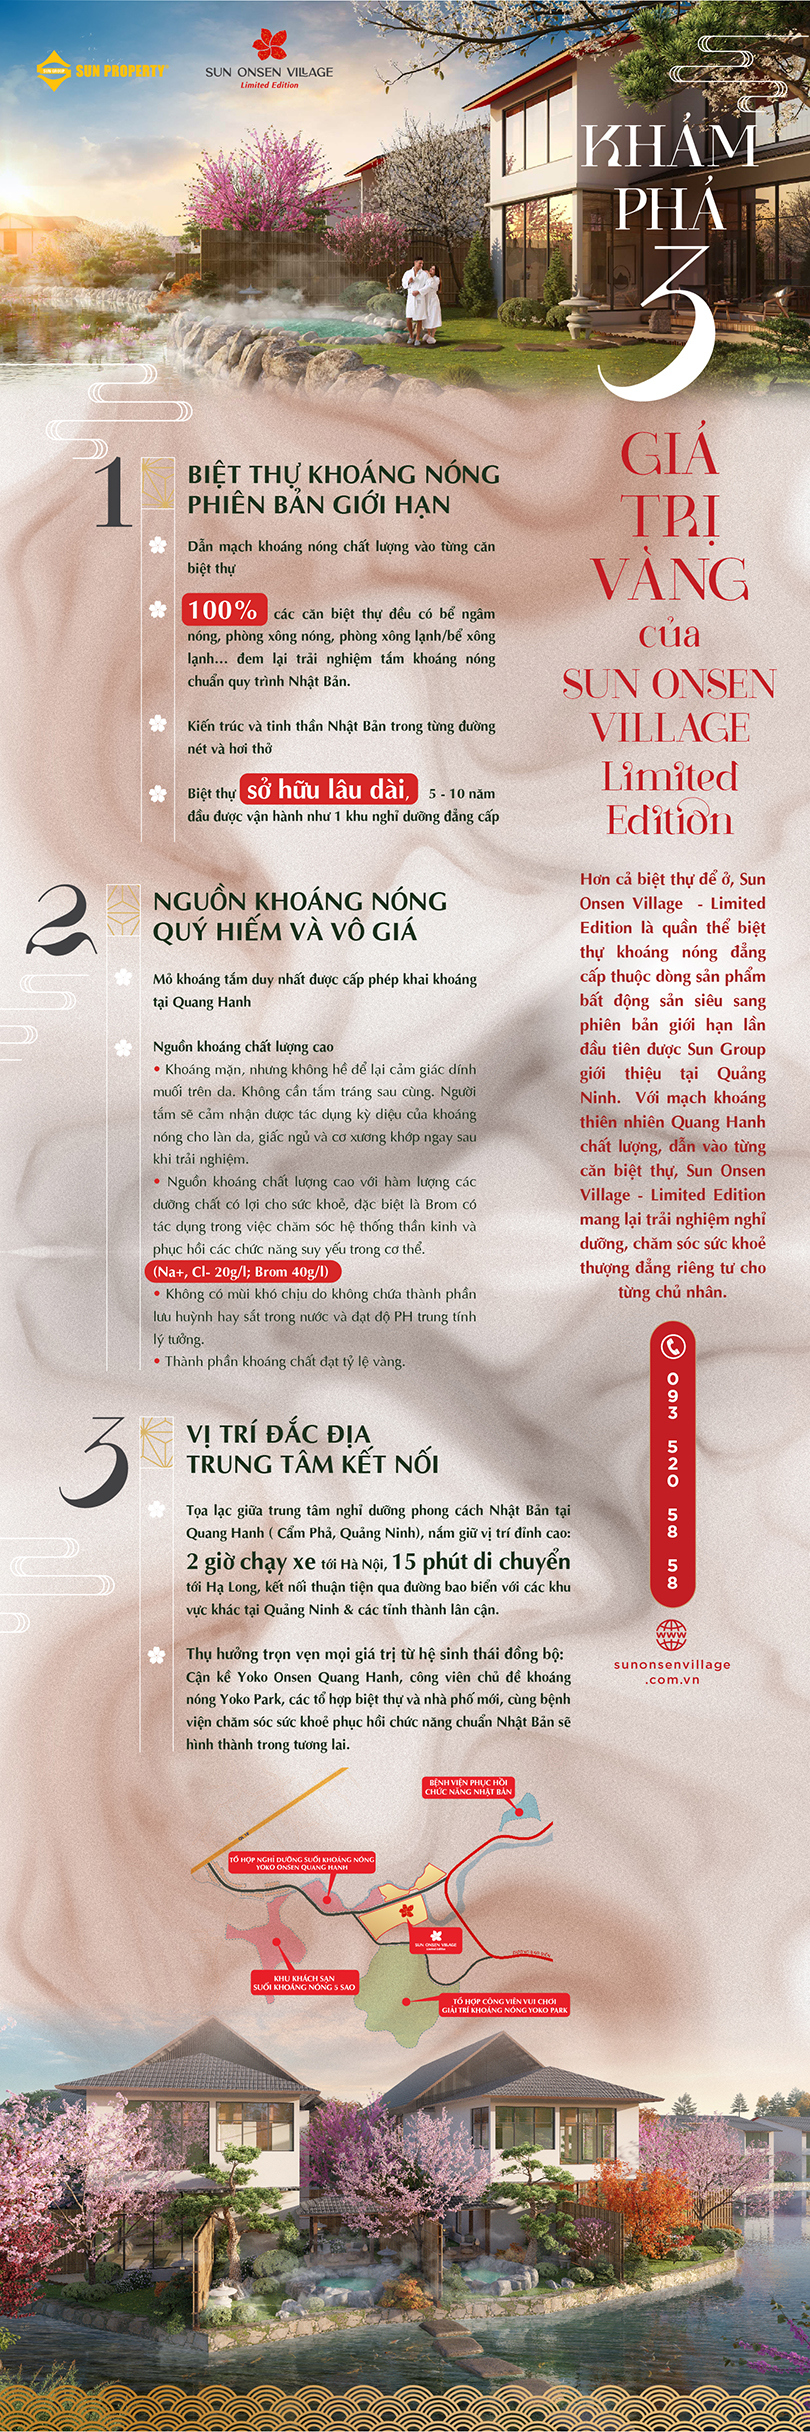 [Infographic] Khám phá 3 giá trị vàng của Sun Onsen Village - Limited Edition - Ảnh 1